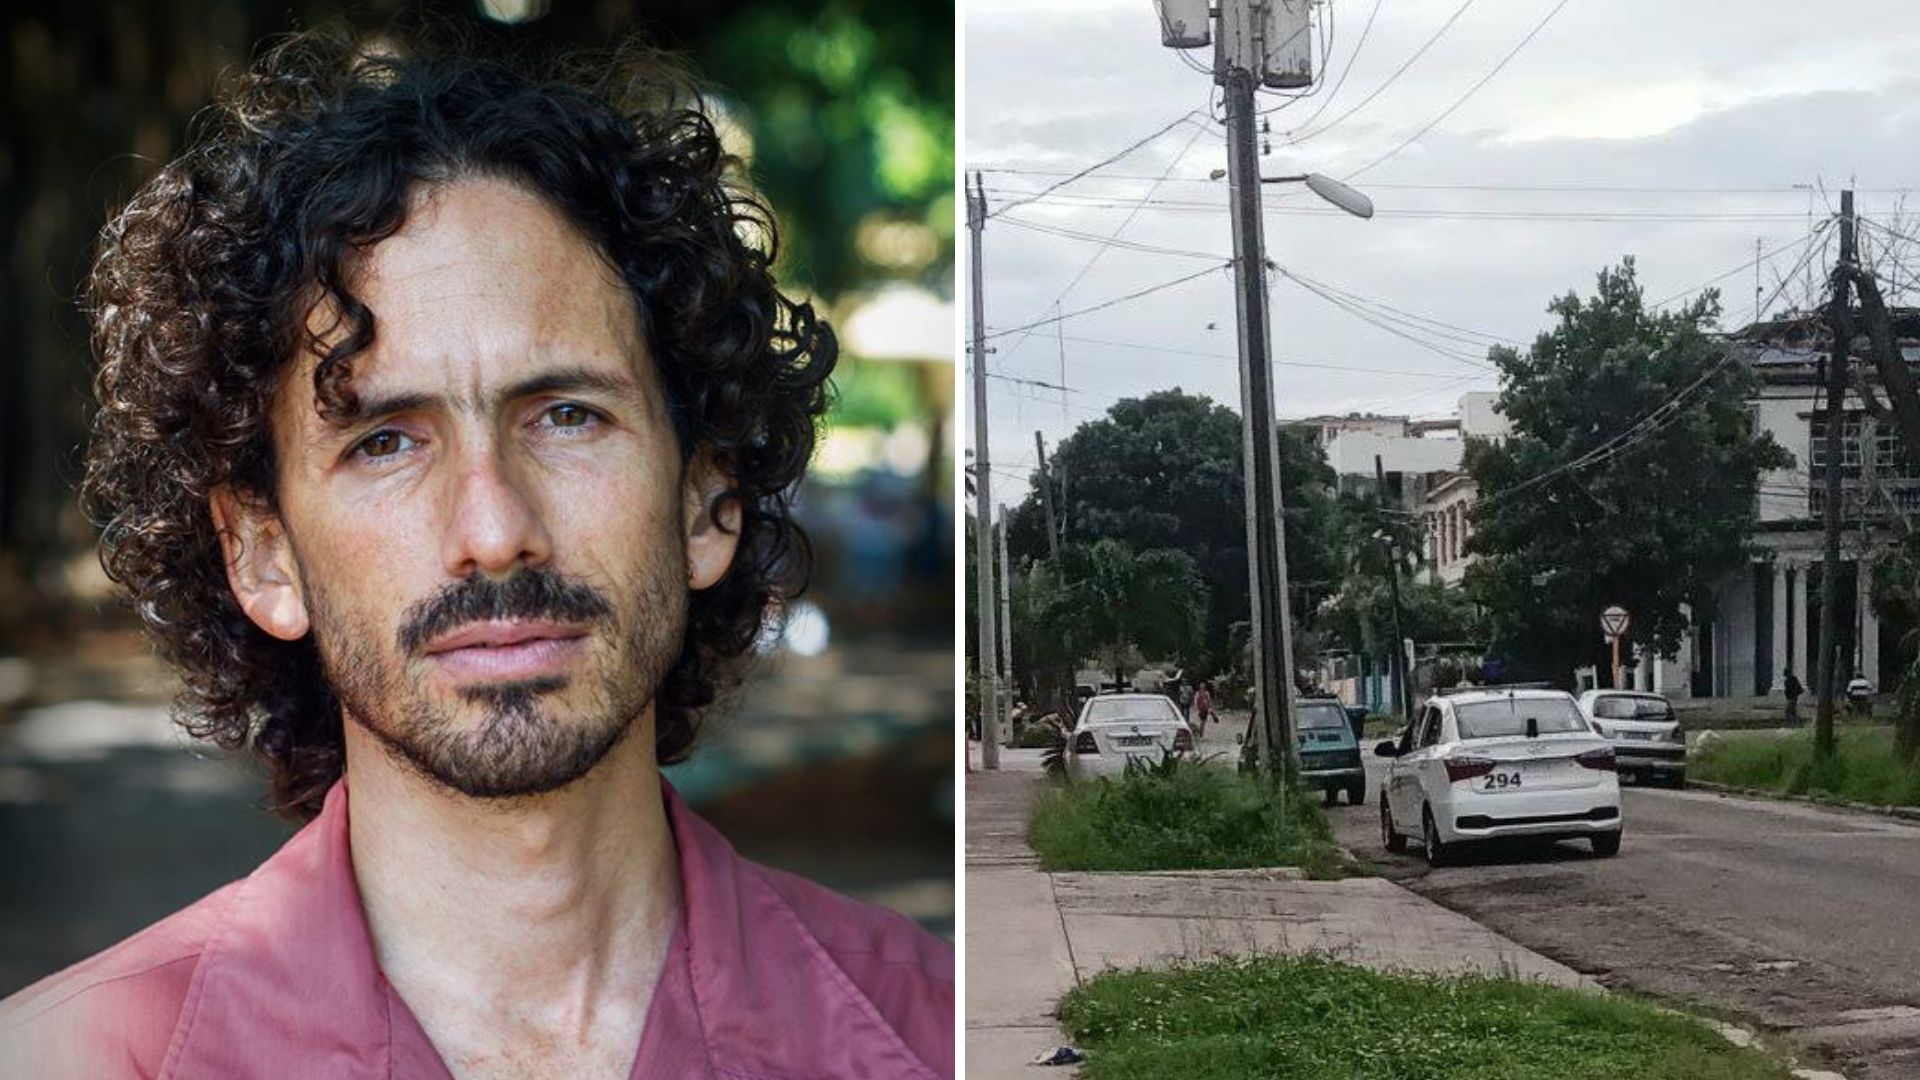 El periodista independiente tiene prohibido salir de su vivienda, a pesar de que la zona occidental de la Isla, donde residen, espera la llegada en las próximas horas de un huracán